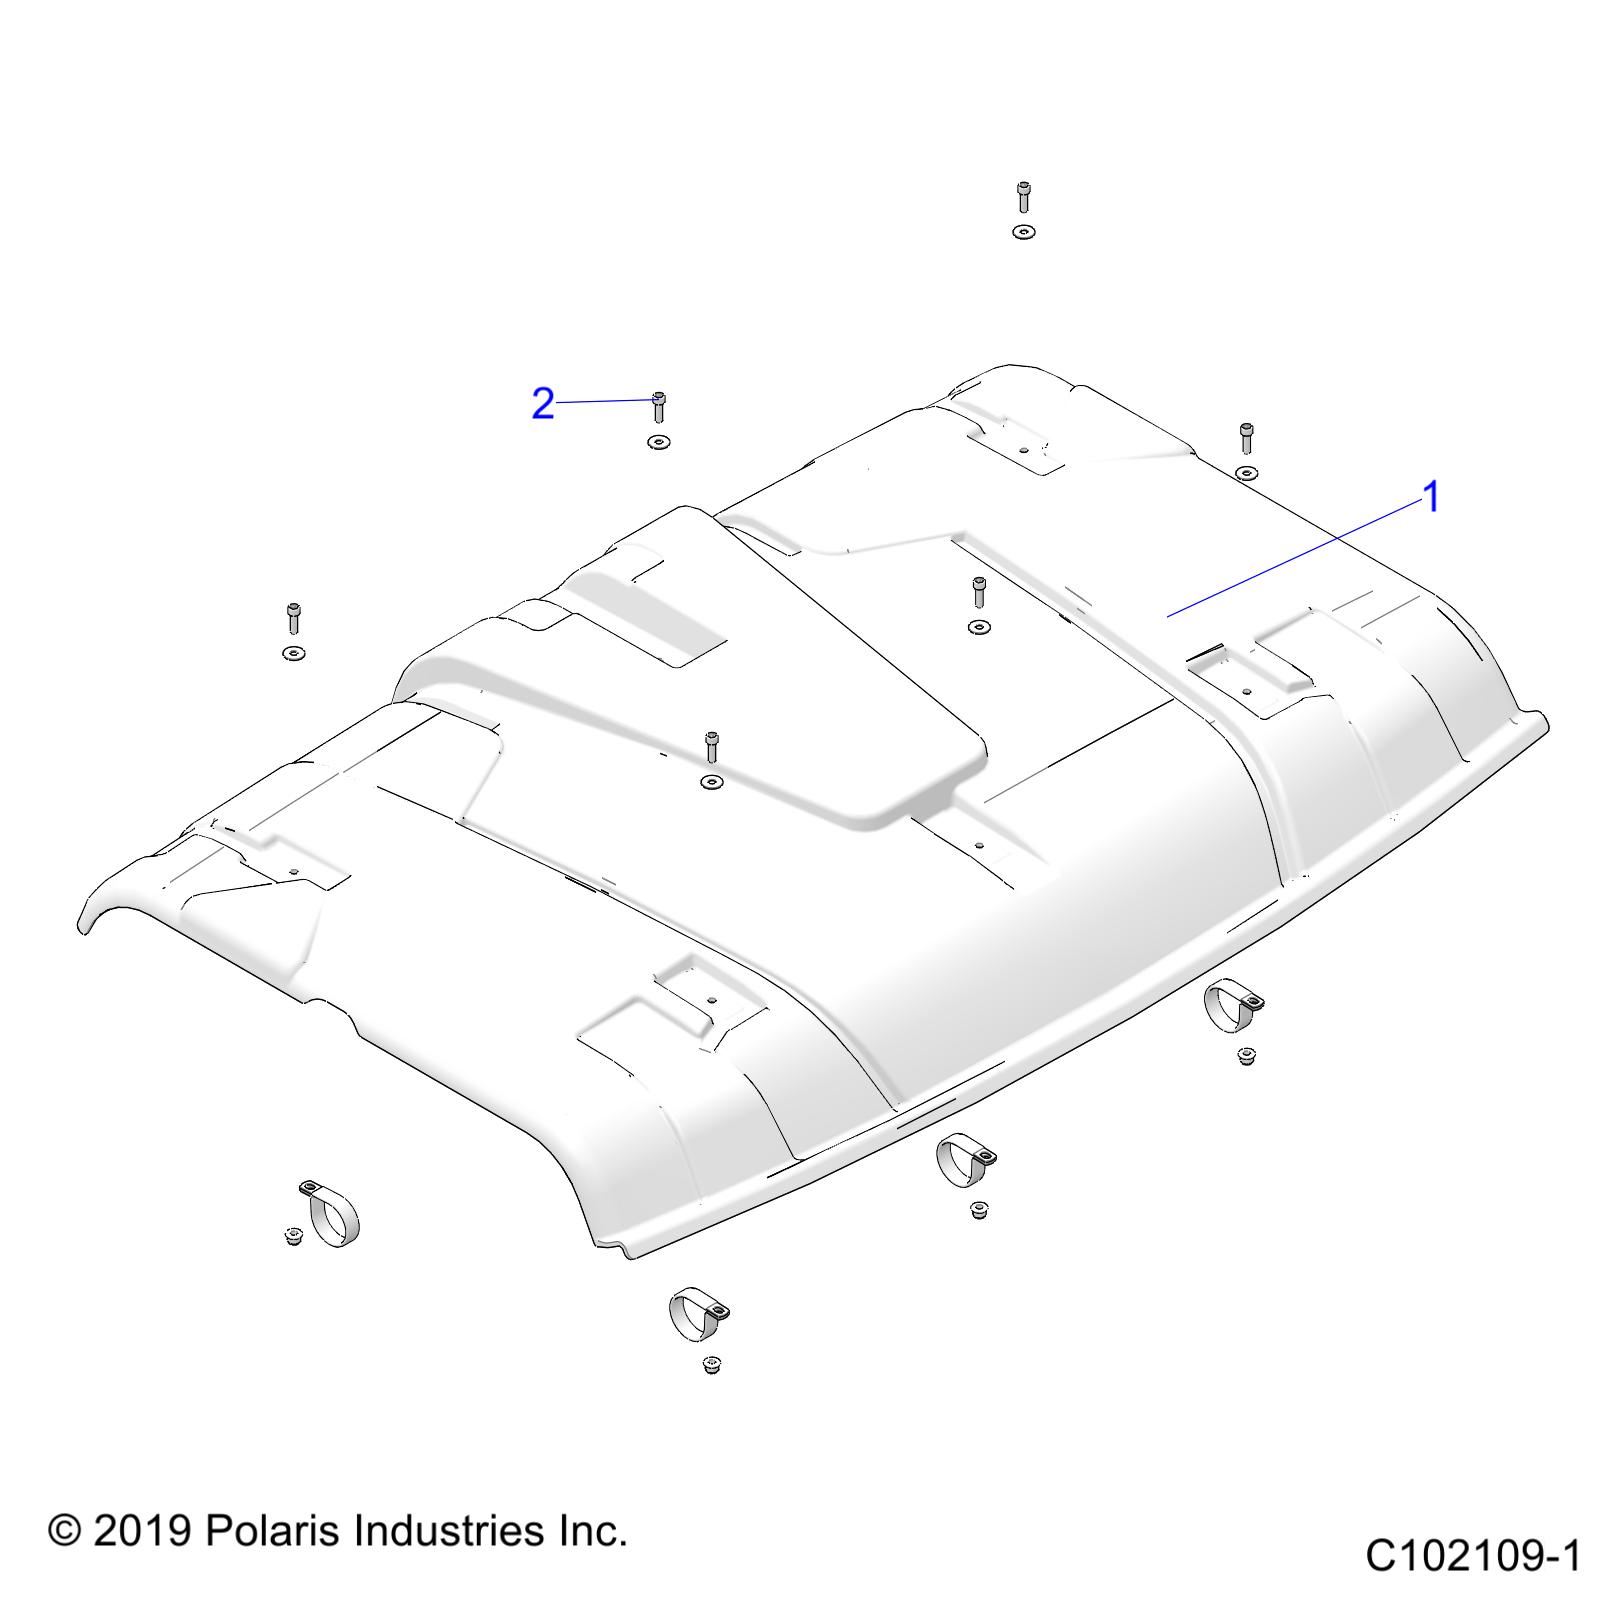 Foto diagrama Polaris que contem a peça 2883289